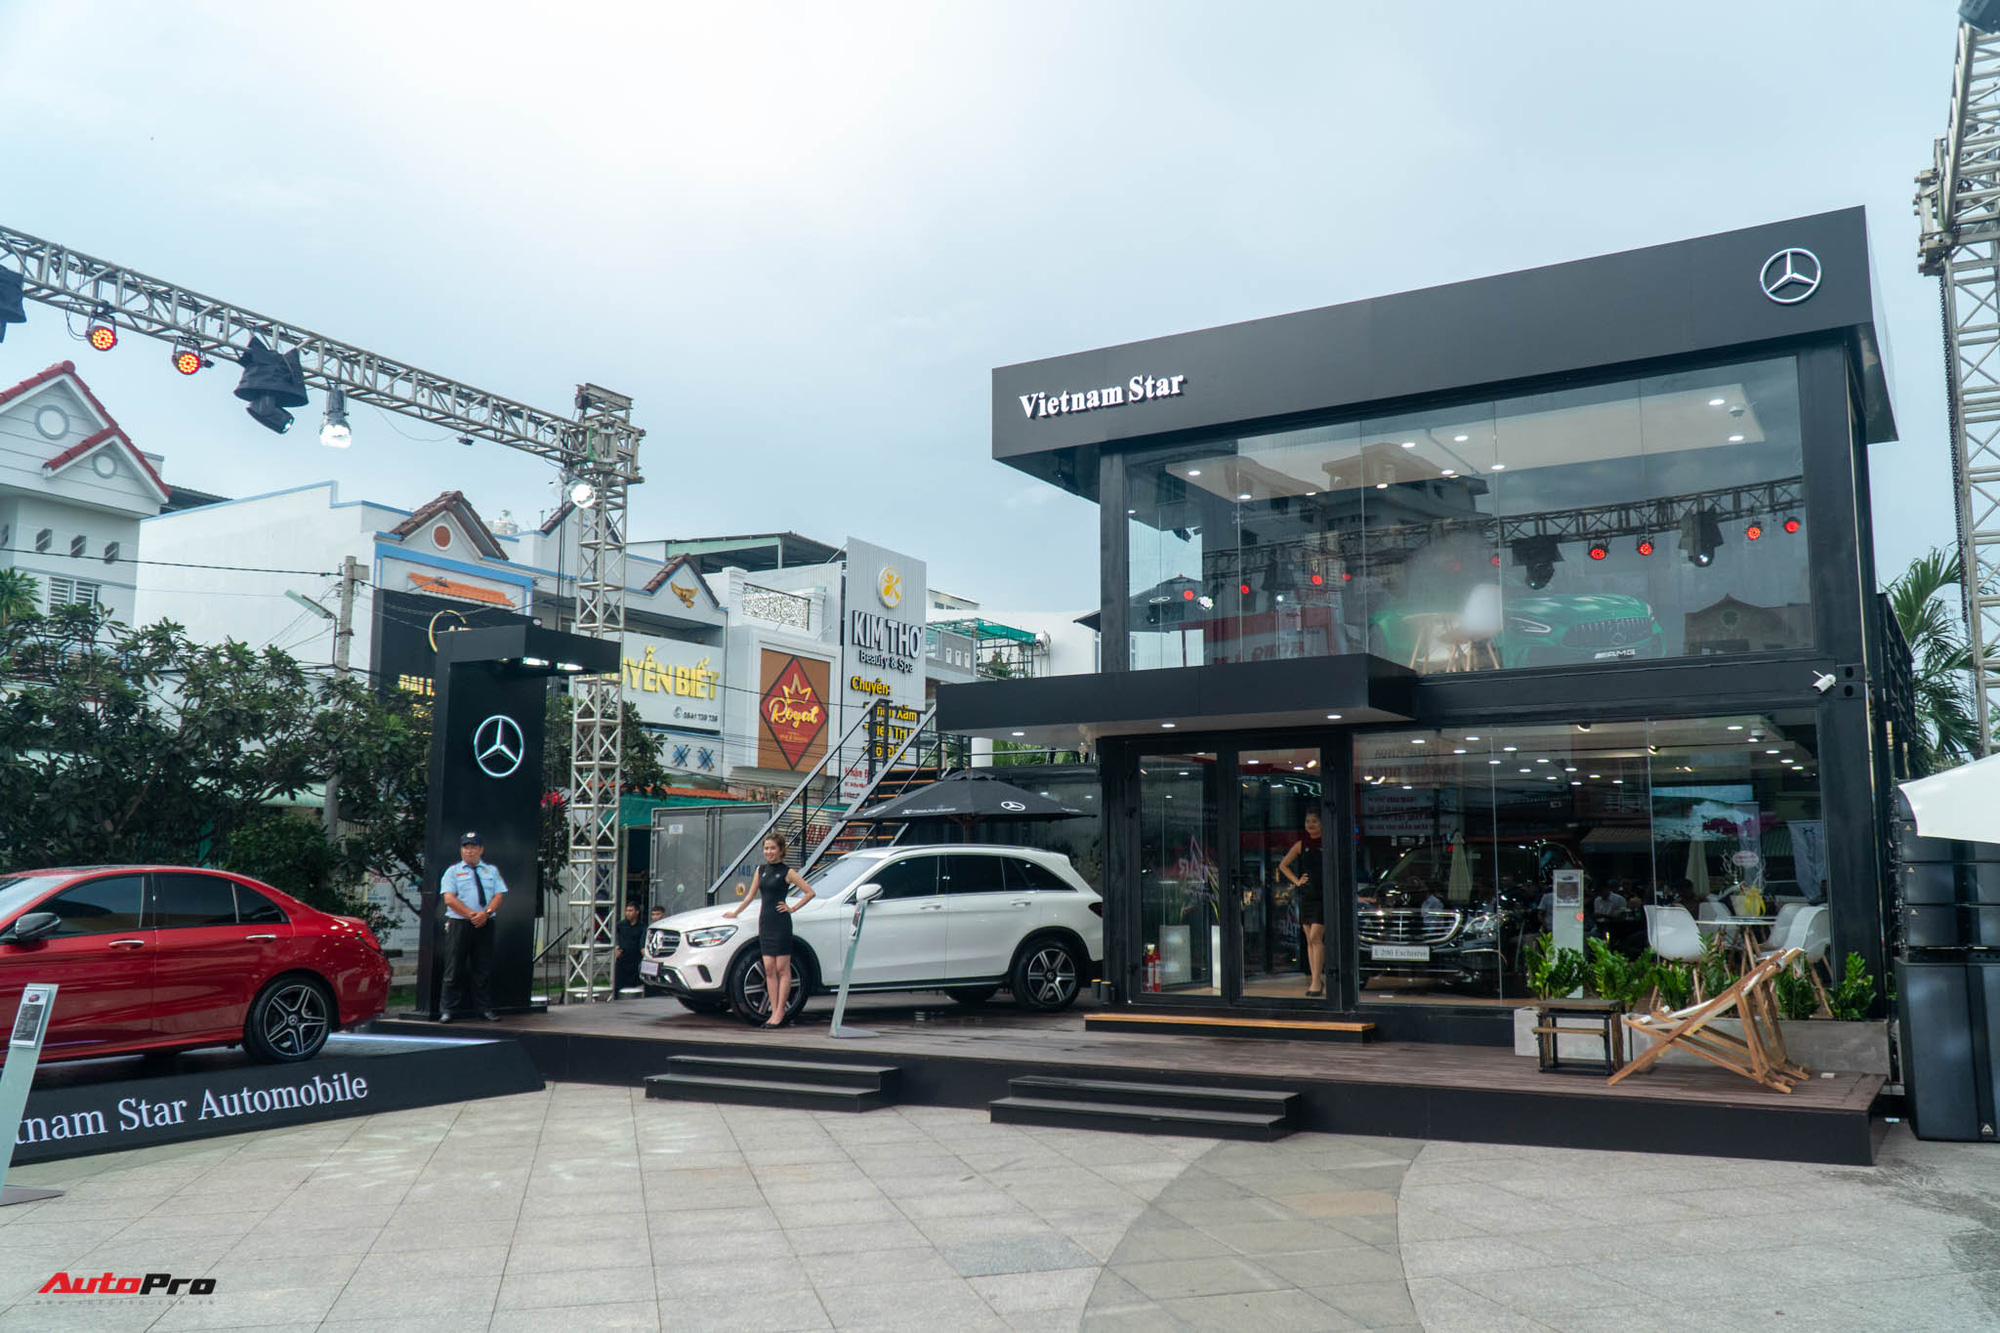 Khám phá showroom Mercedes-Benz di động lạ lẫm đầu tiên tại Việt Nam: Có thể đi muôn nơi, tiếp cùng lúc 20 khách hàng - Ảnh 2.